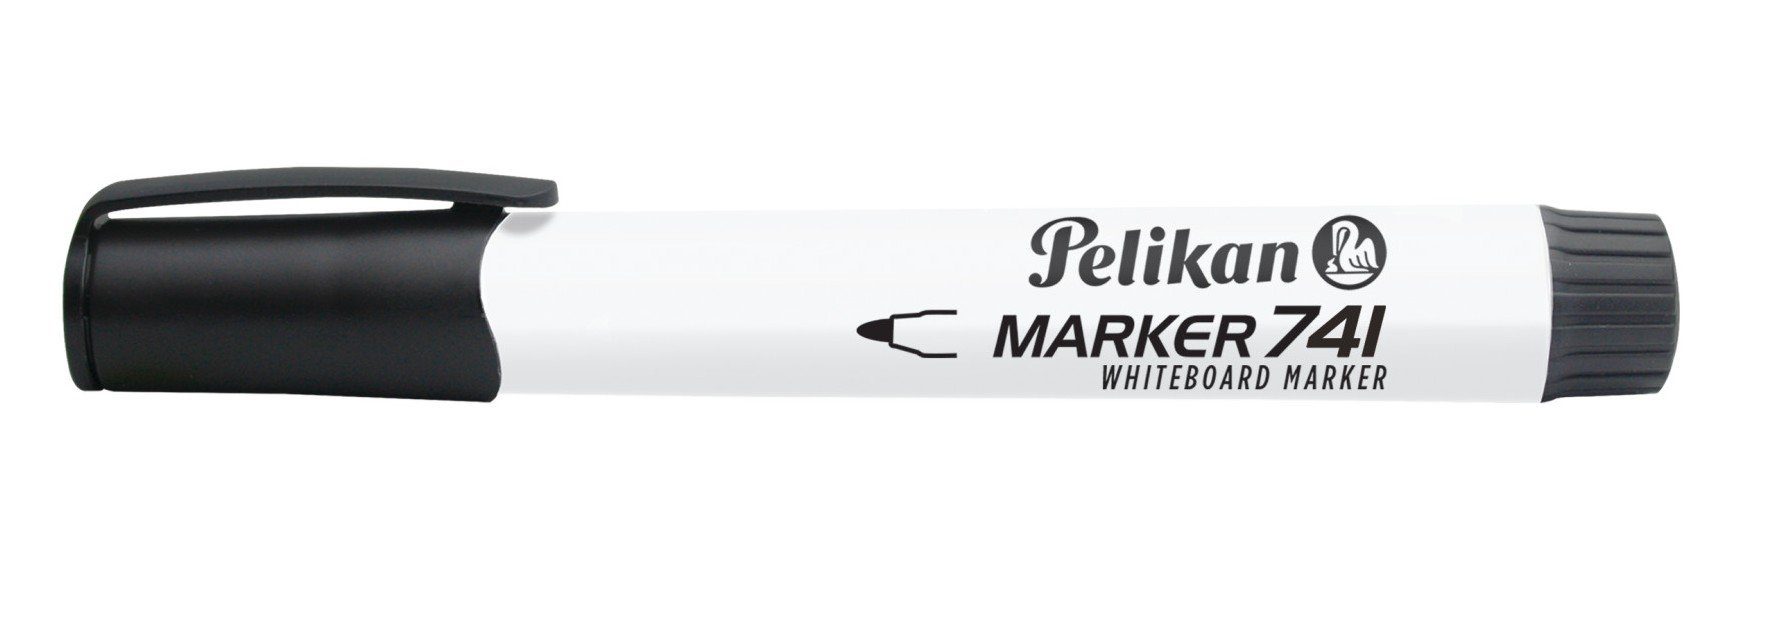 Pelikan Marker Pelikan Whiteboard Marker 741 schwarz